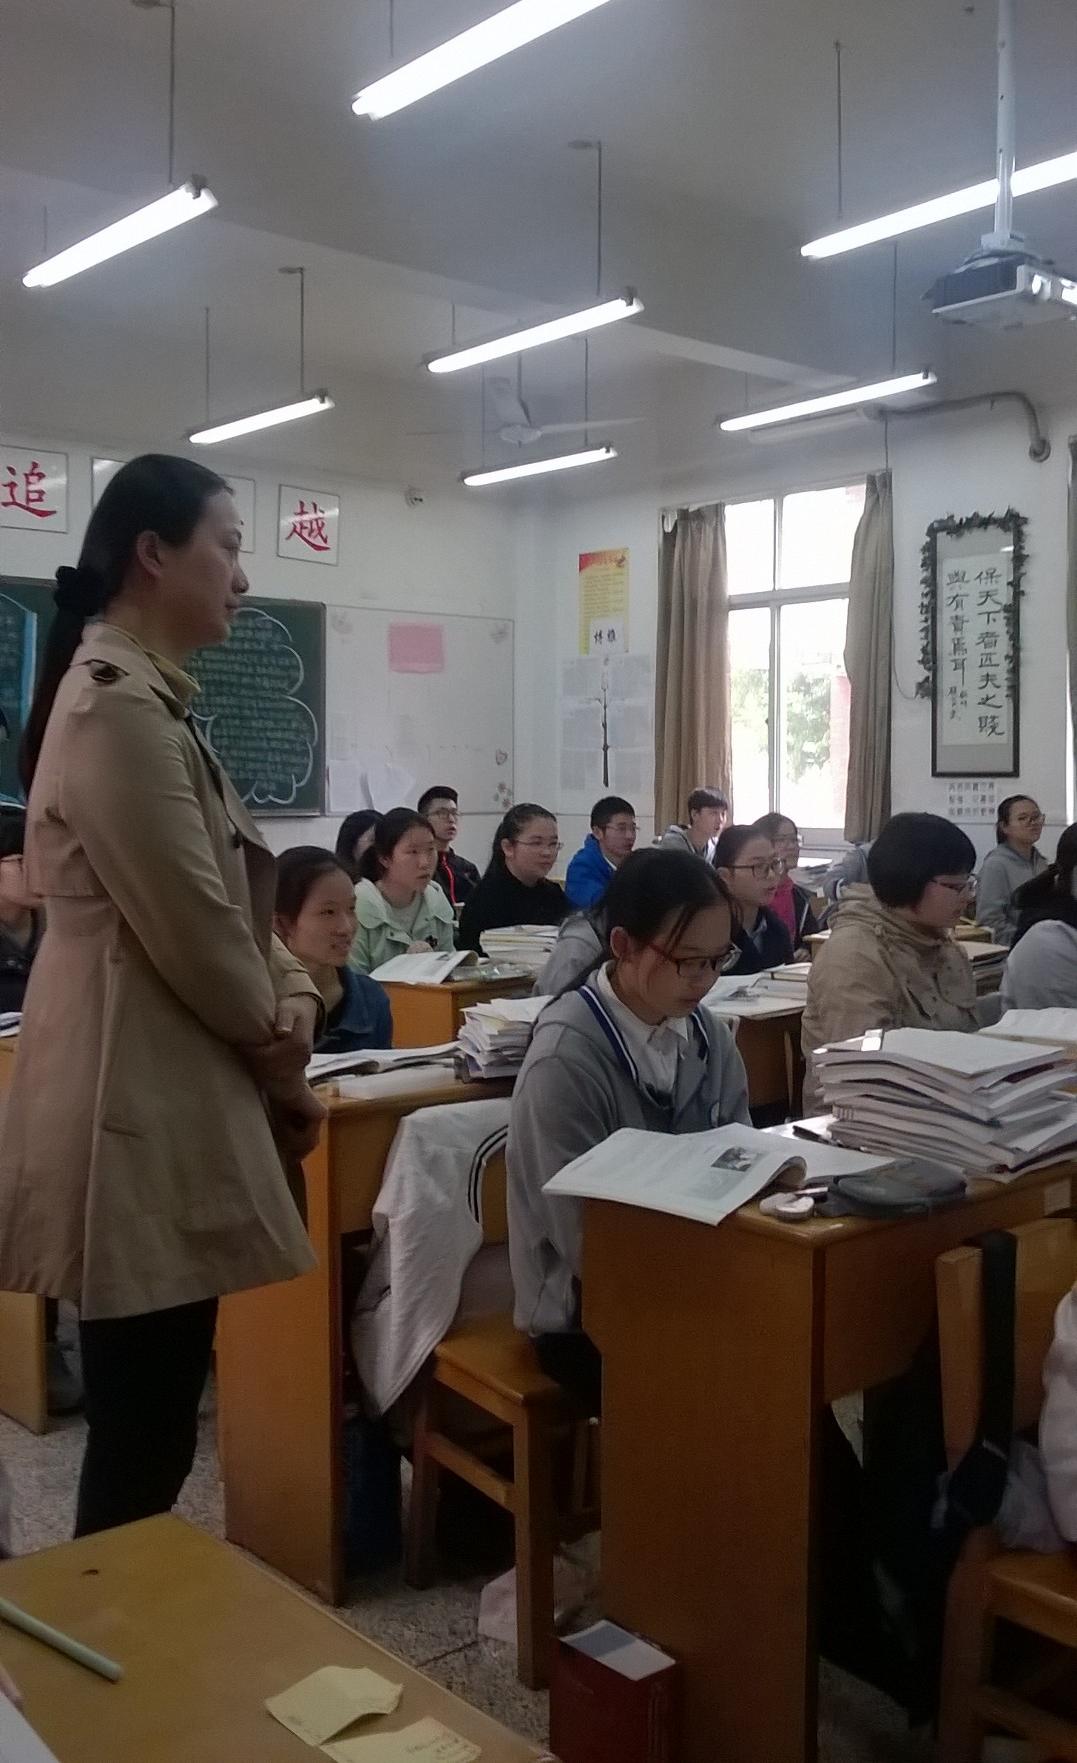 Kiina - esittelemässä SAMKissa koulussa